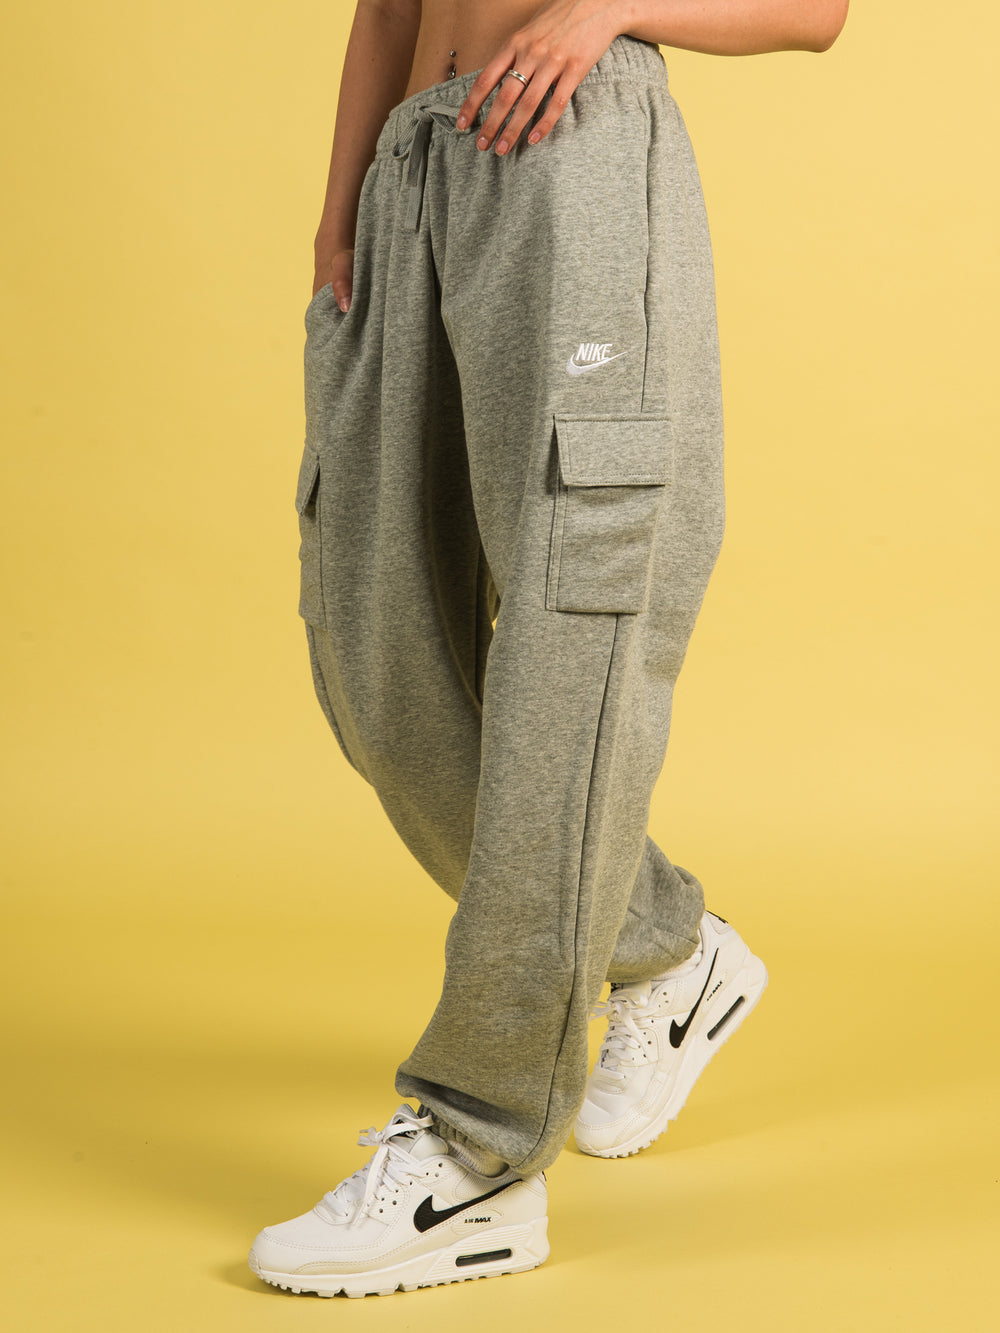 Nike Sportswear Women's Woven Cargo Trousers. Nike CA